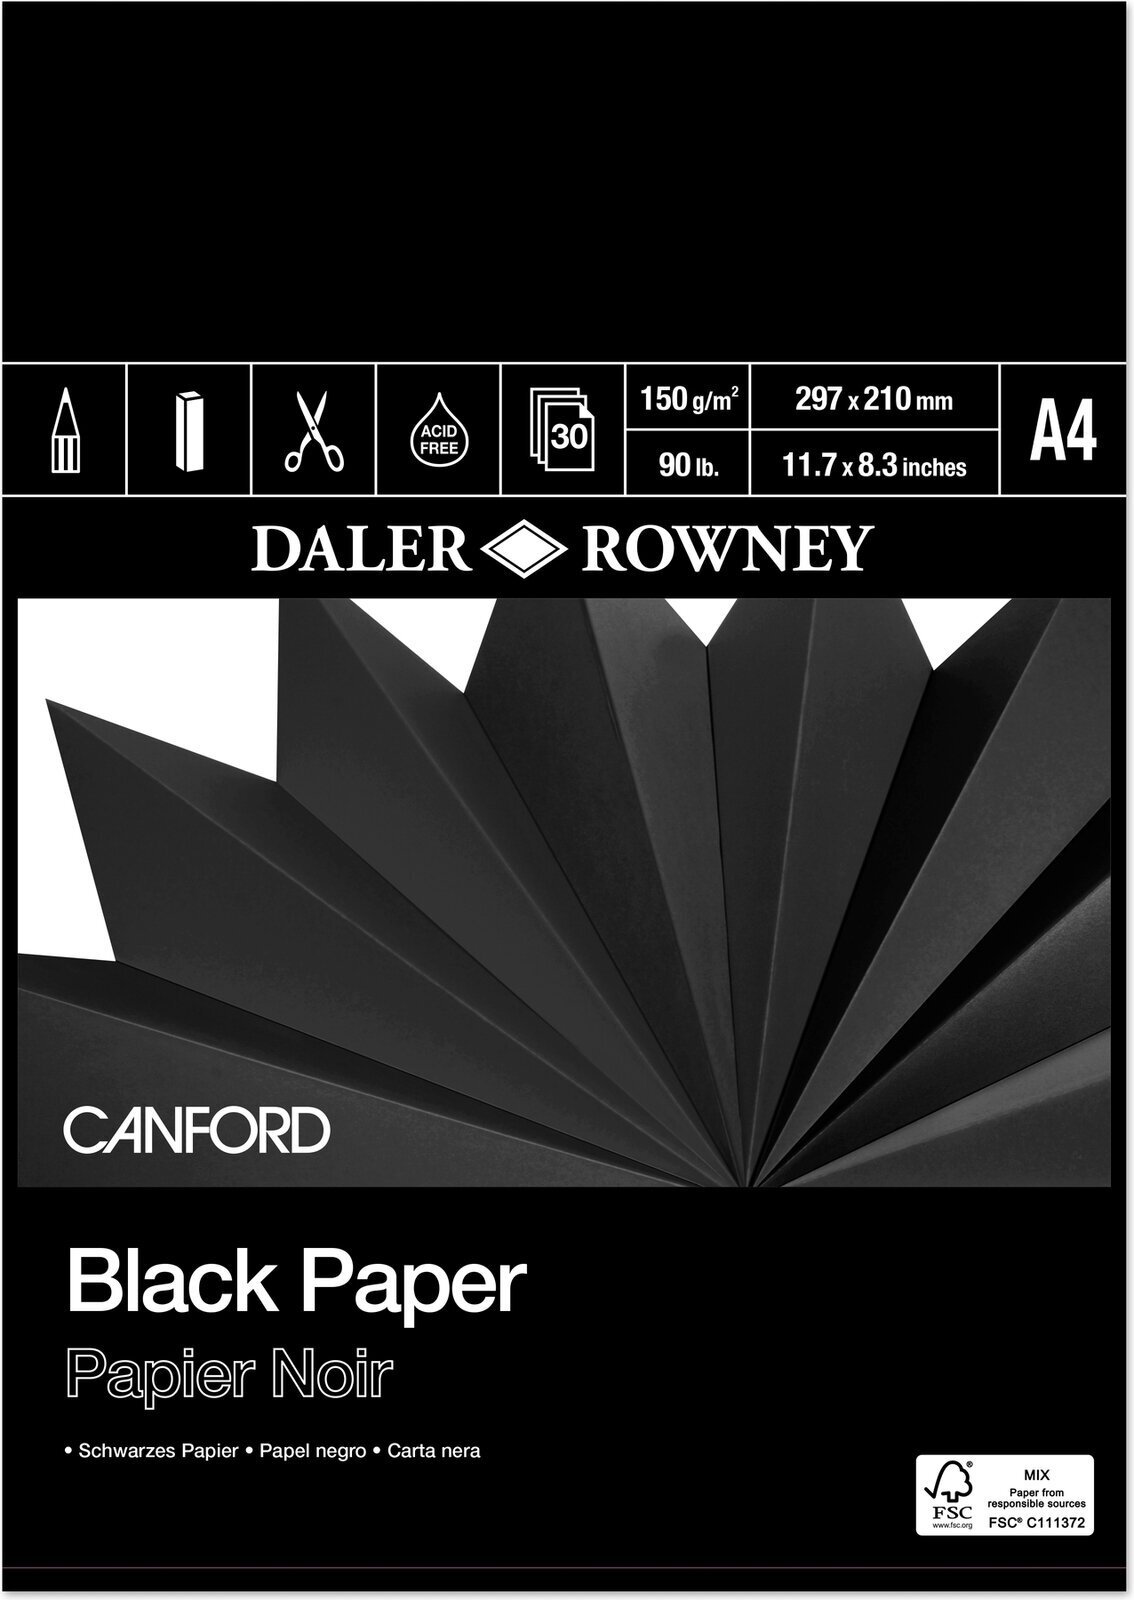 Vázlattömb Daler Rowney Canford Coloured Paper A4 150 g Vázlattömb